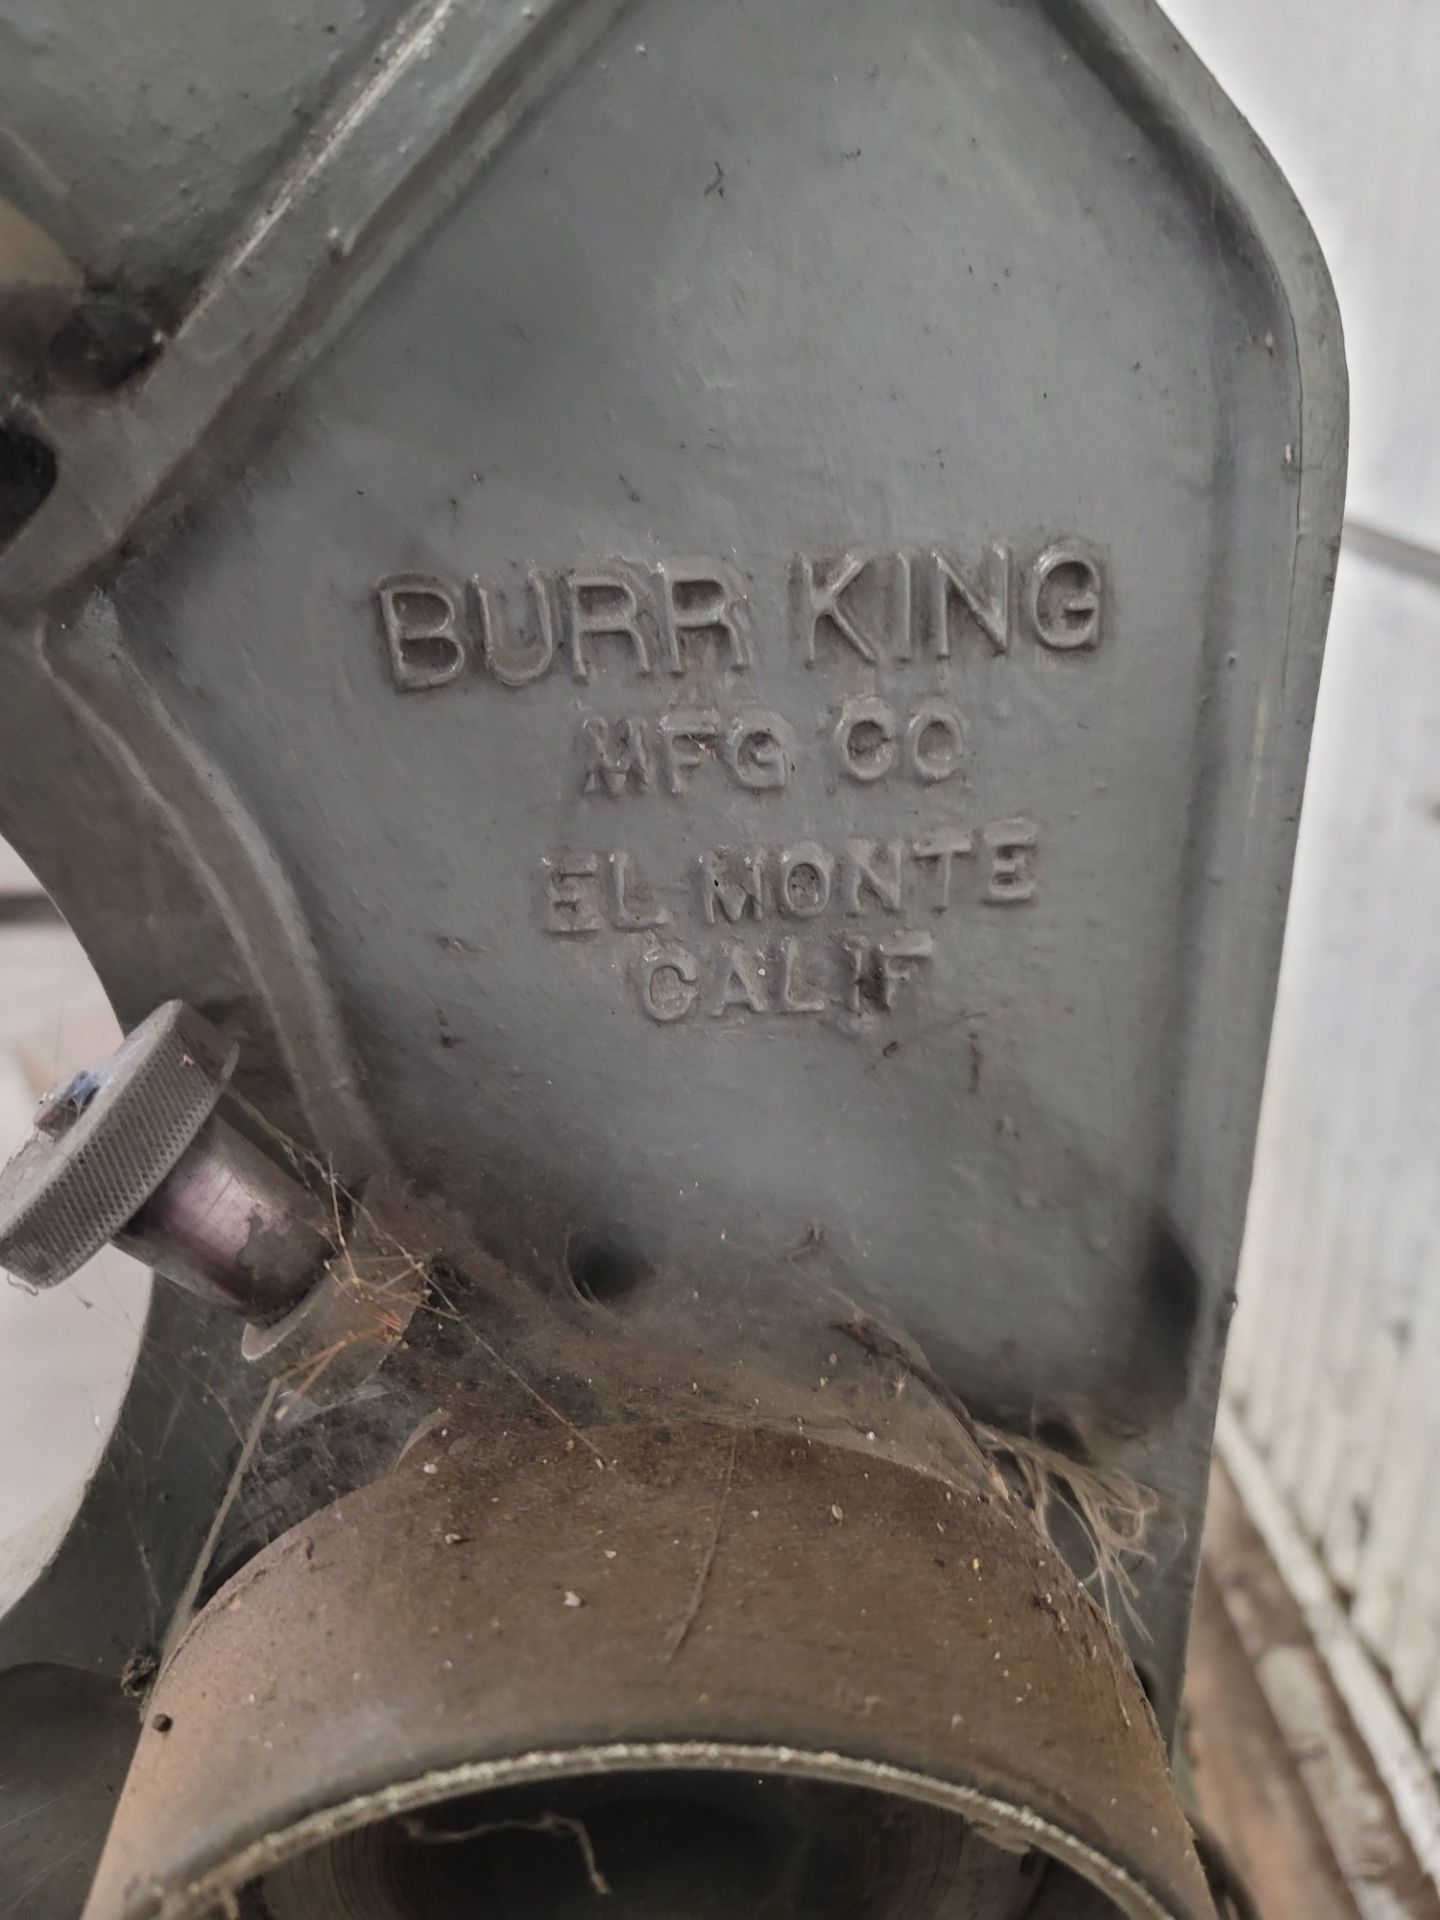 BURR KING 1-1/2" BELT SANDER, MODEL 760 - Image 3 of 3